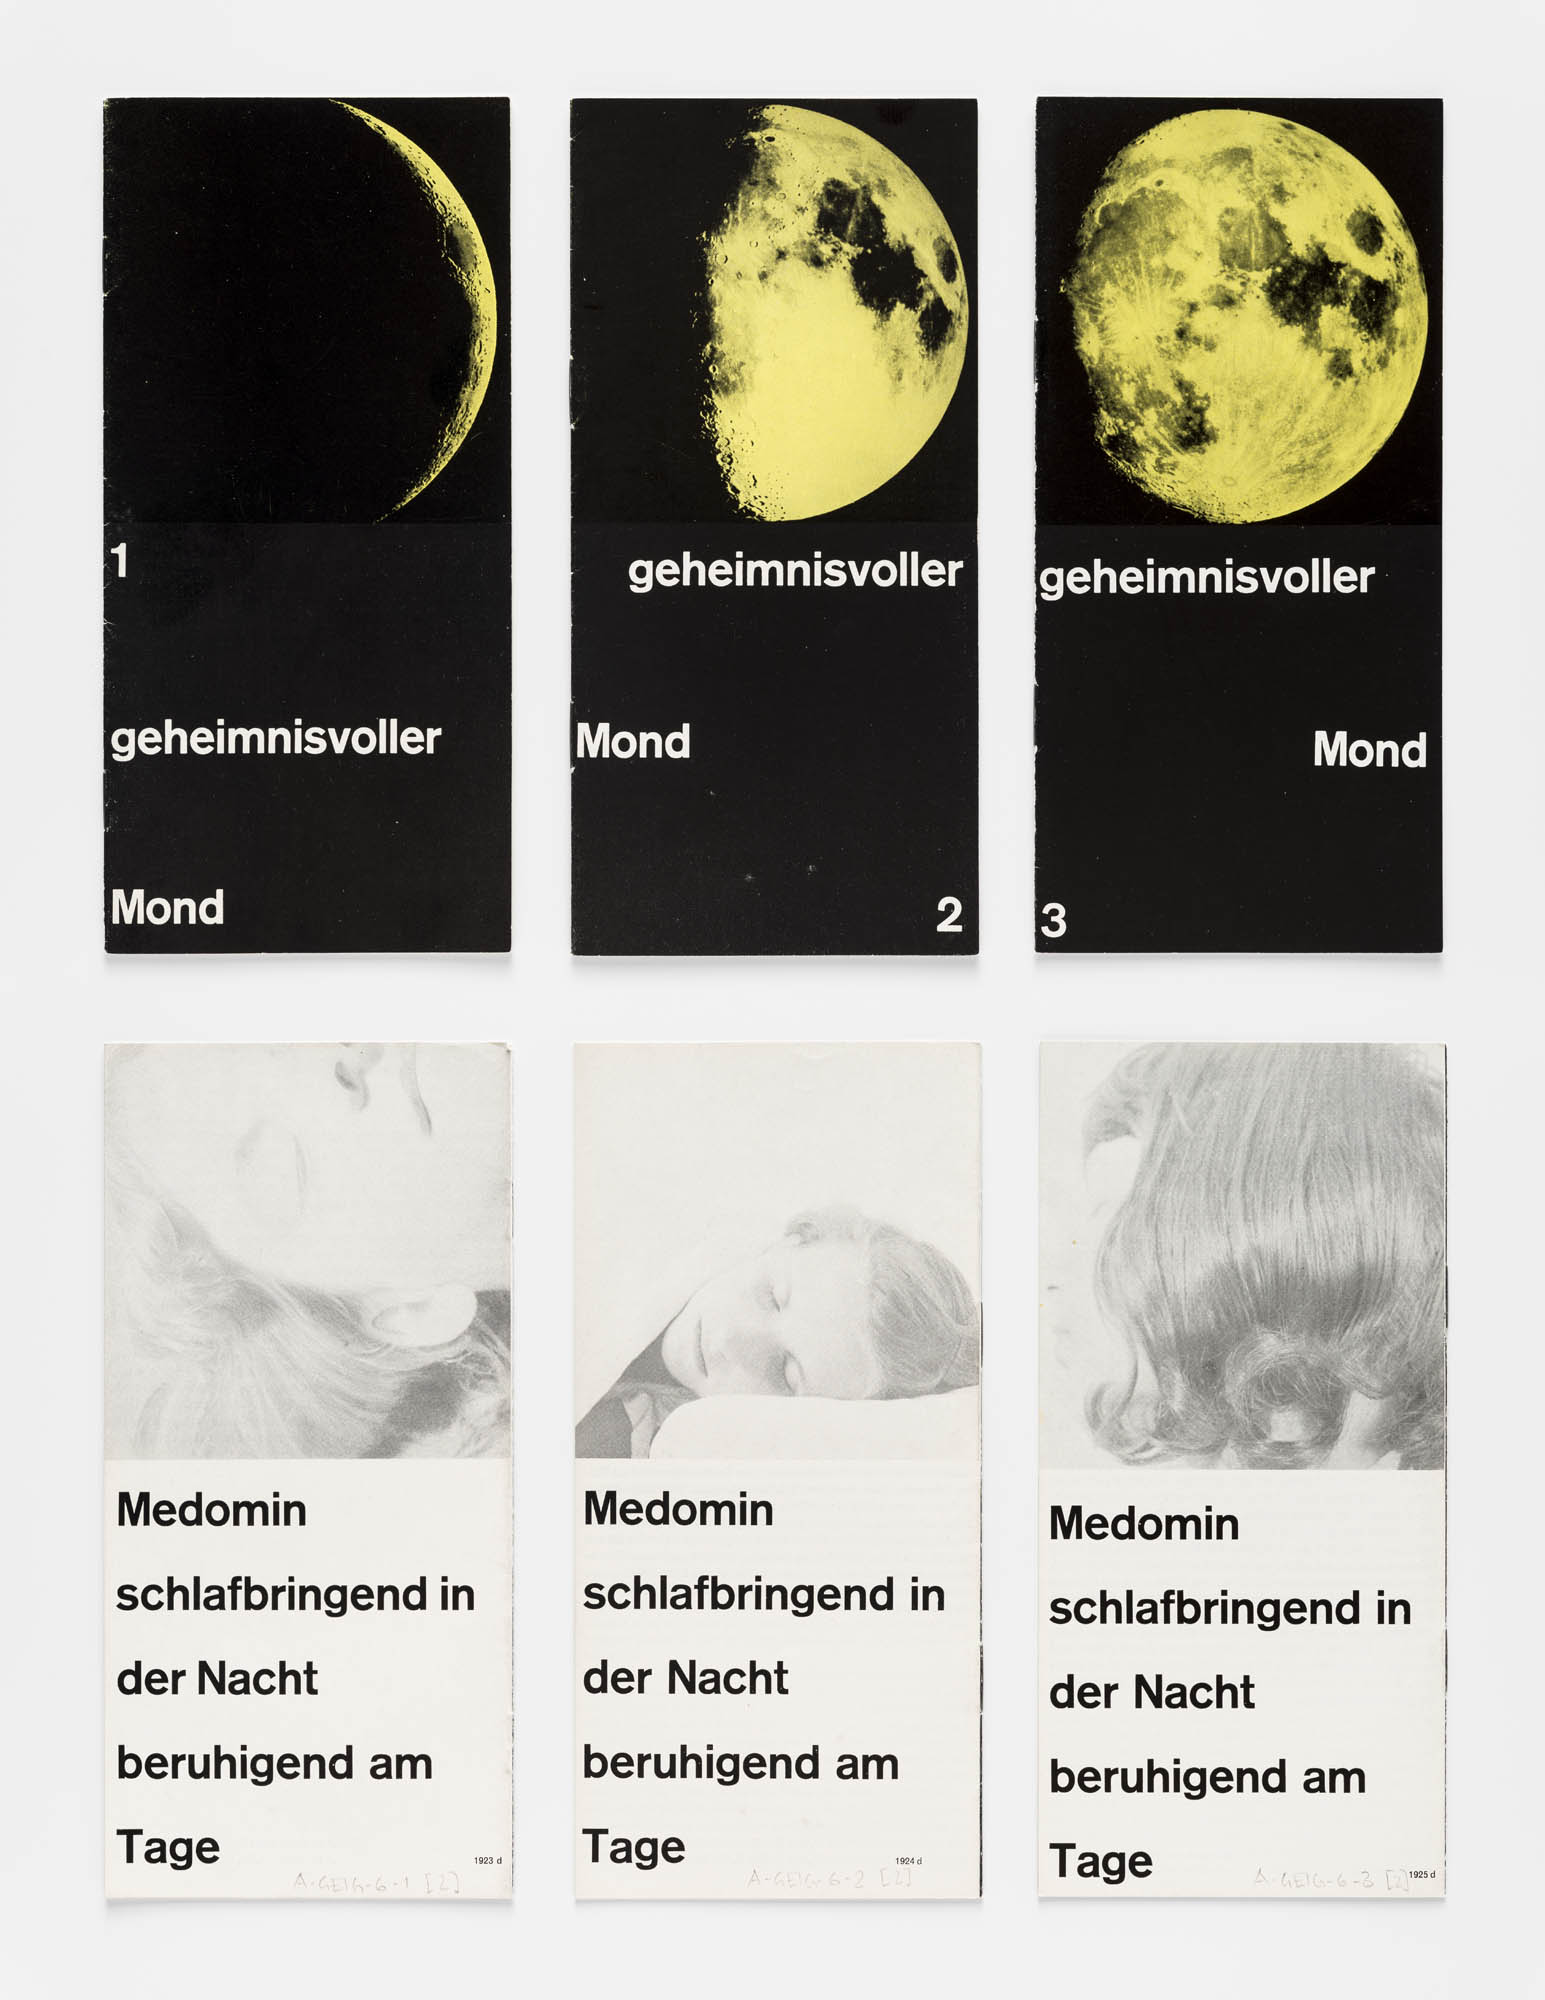 Geheimnisvoller Mond 1 – Medomin schlafbringend in der Nacht beruhigend am Tag Gérard Ifert Advertising brochure